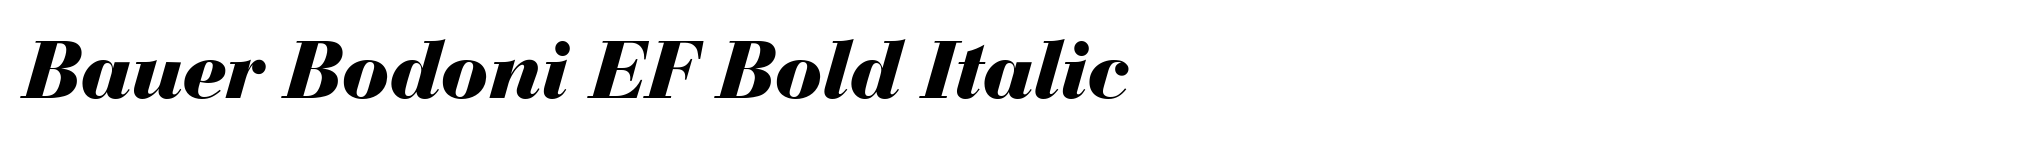 Bauer Bodoni EF Bold Italic image